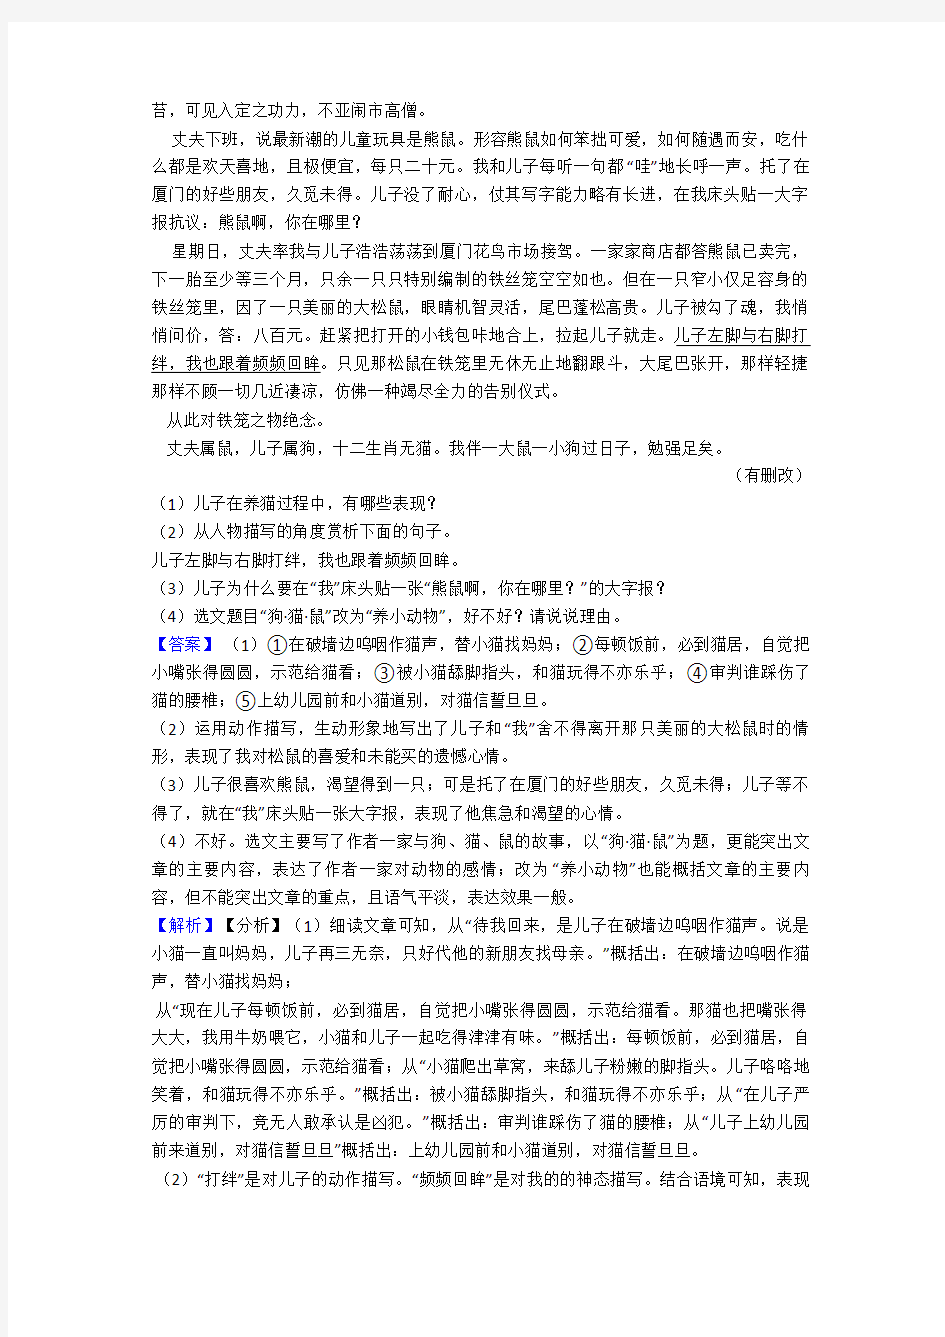 七年级初中语文阅读训练试题及答案(1)